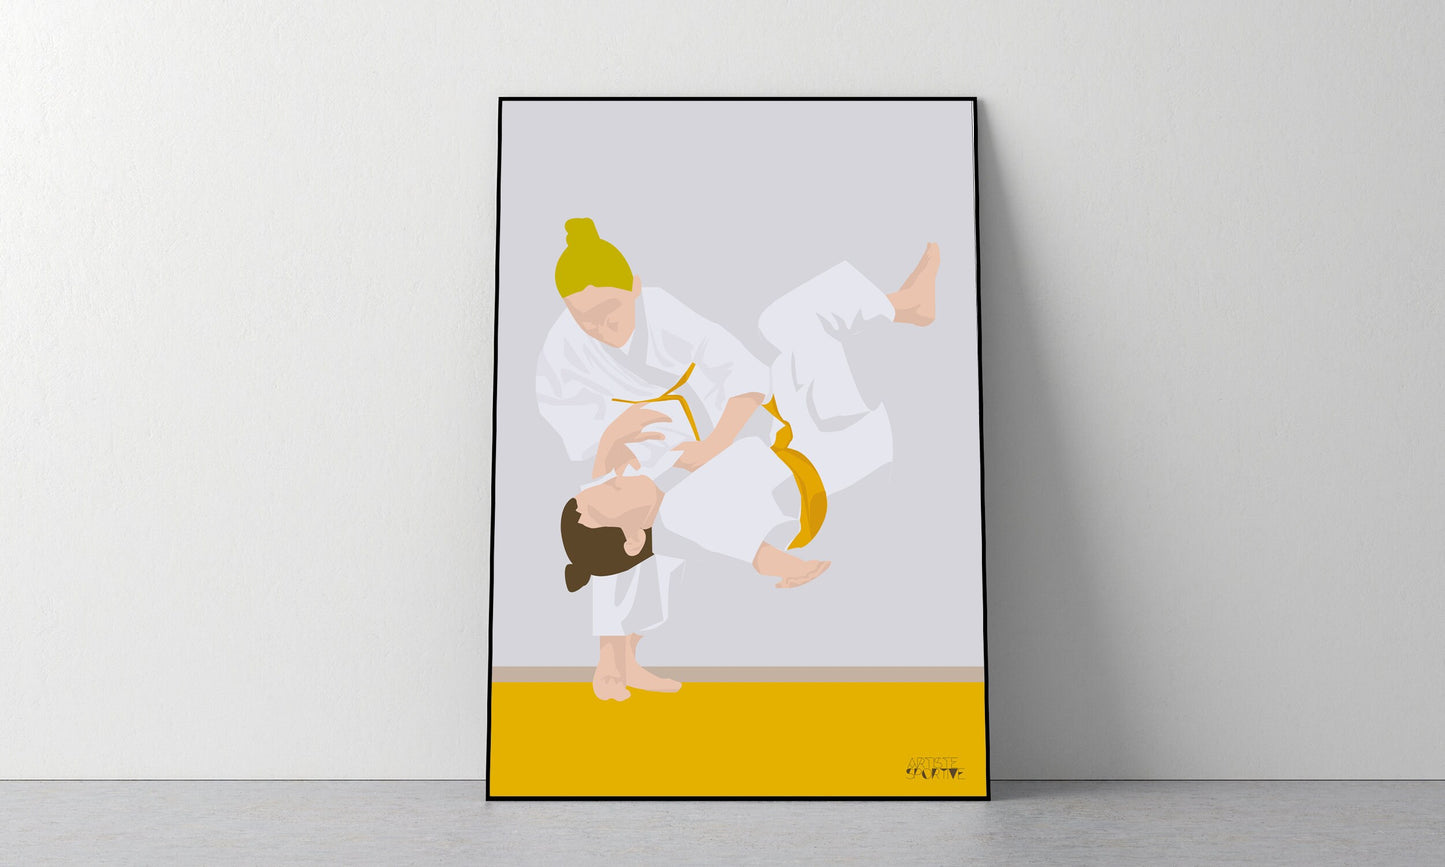 Judo poster "Jeanne the judoka"